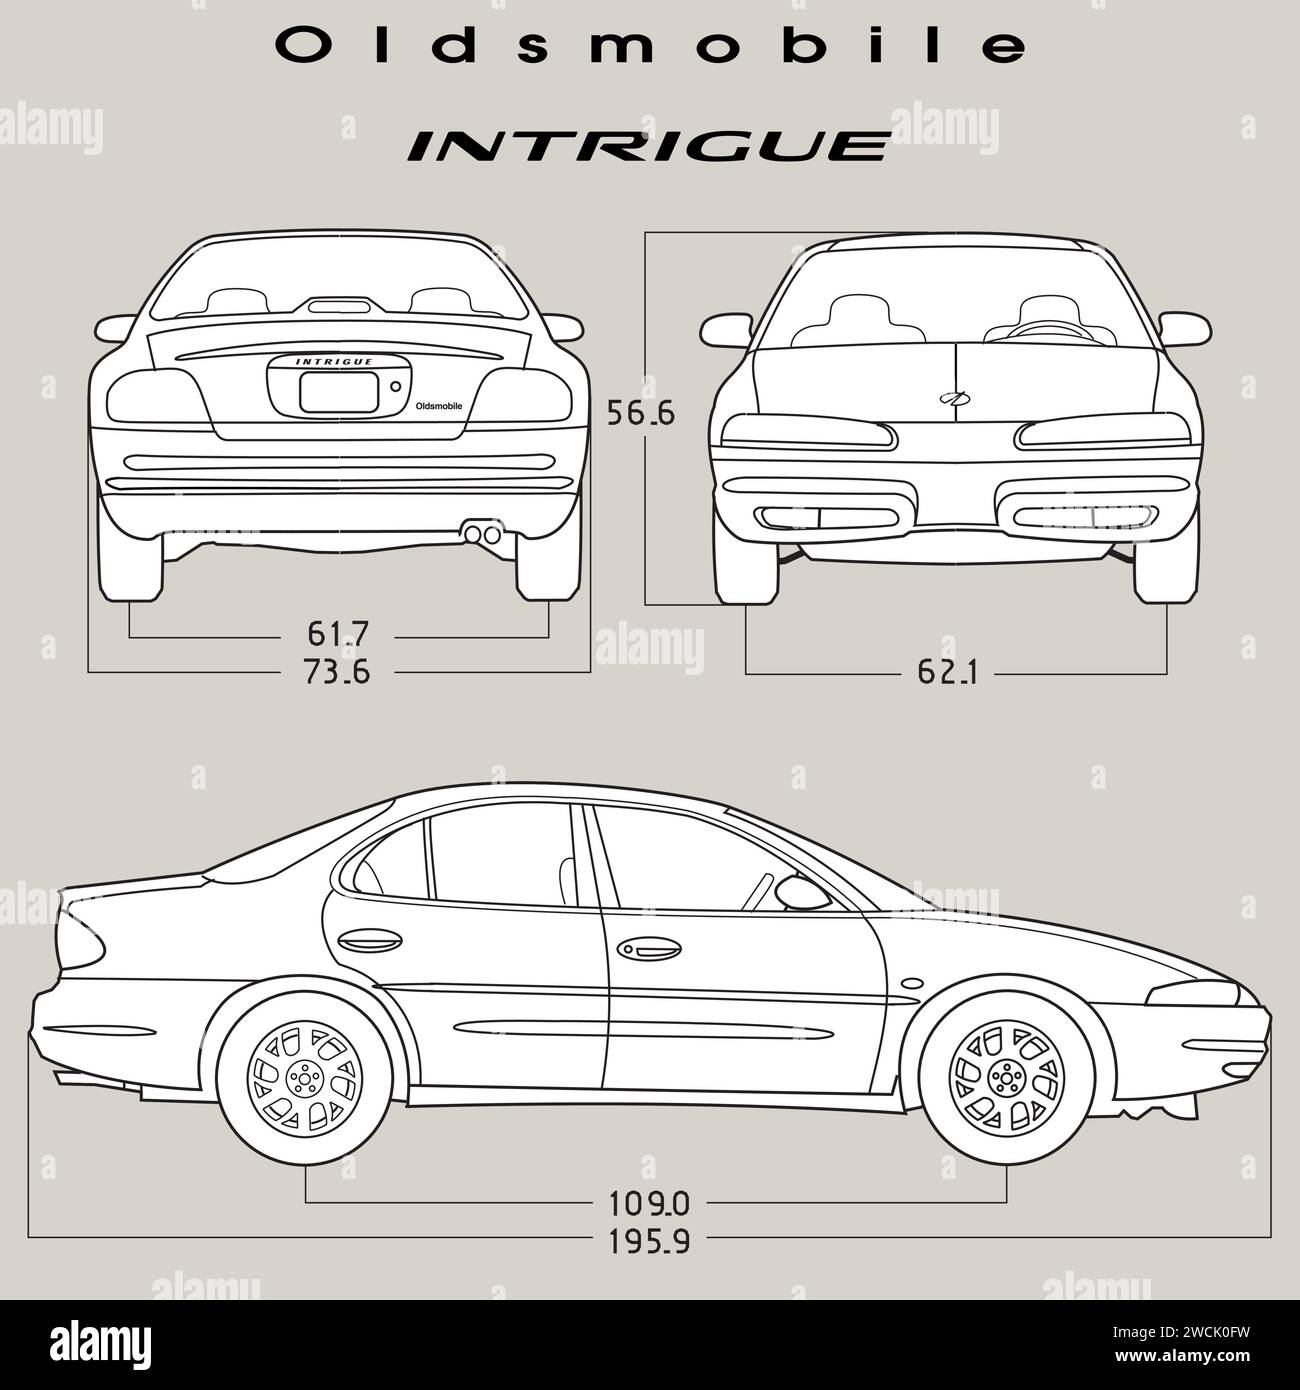 Modèle de voiture intrigue 2002 d'Oldsmobile Illustration de Vecteur